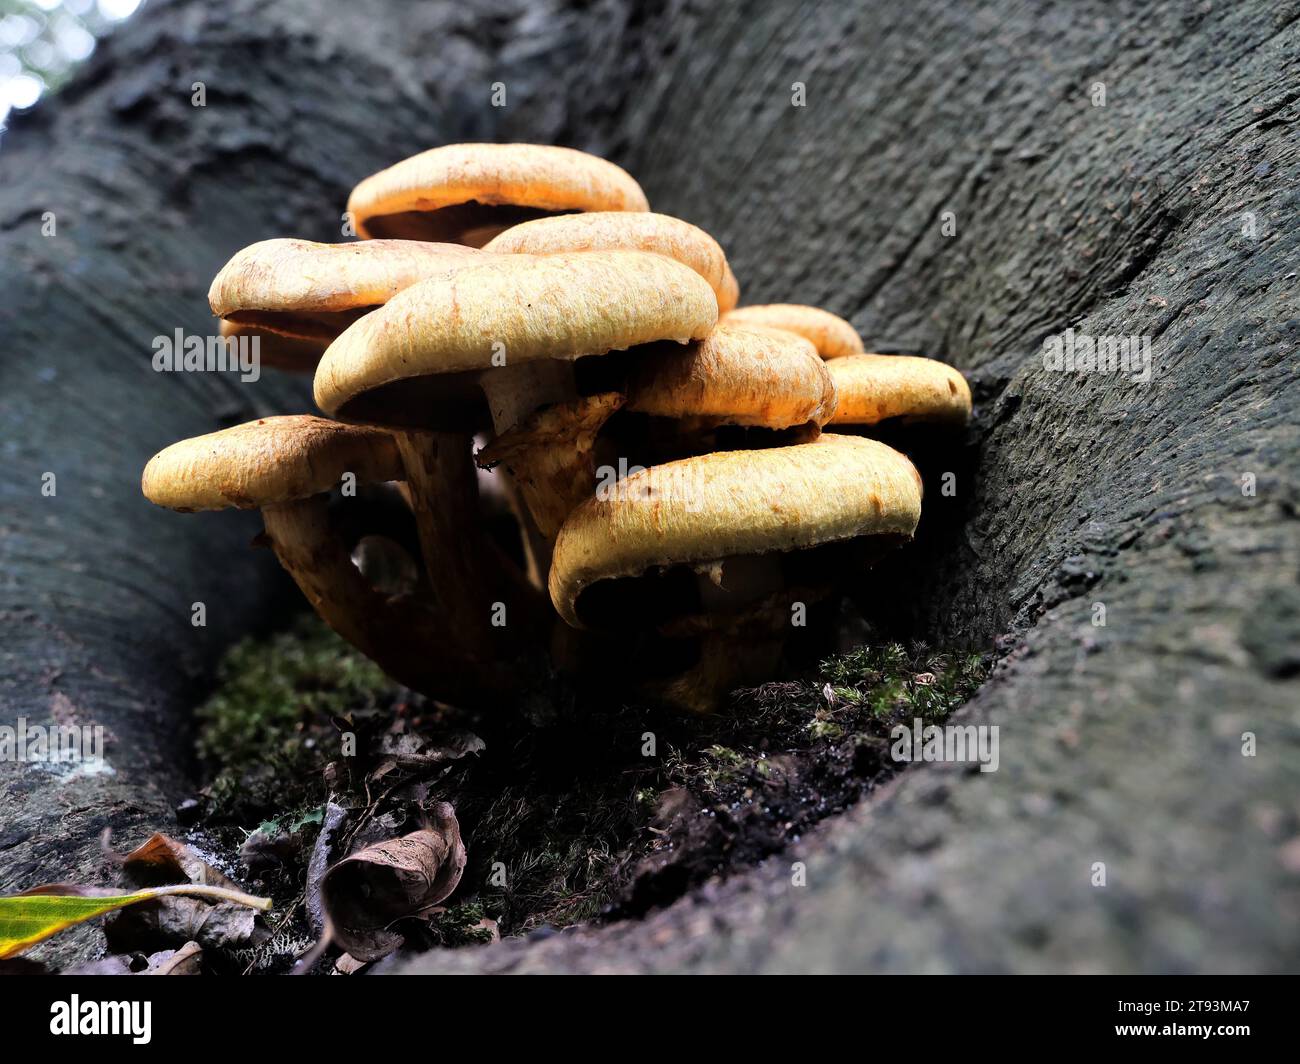 Hallimasch si nutre di materia organica morta, scomponendo il legno caduto e restituendo nutrienti al suolo. Foto Stock